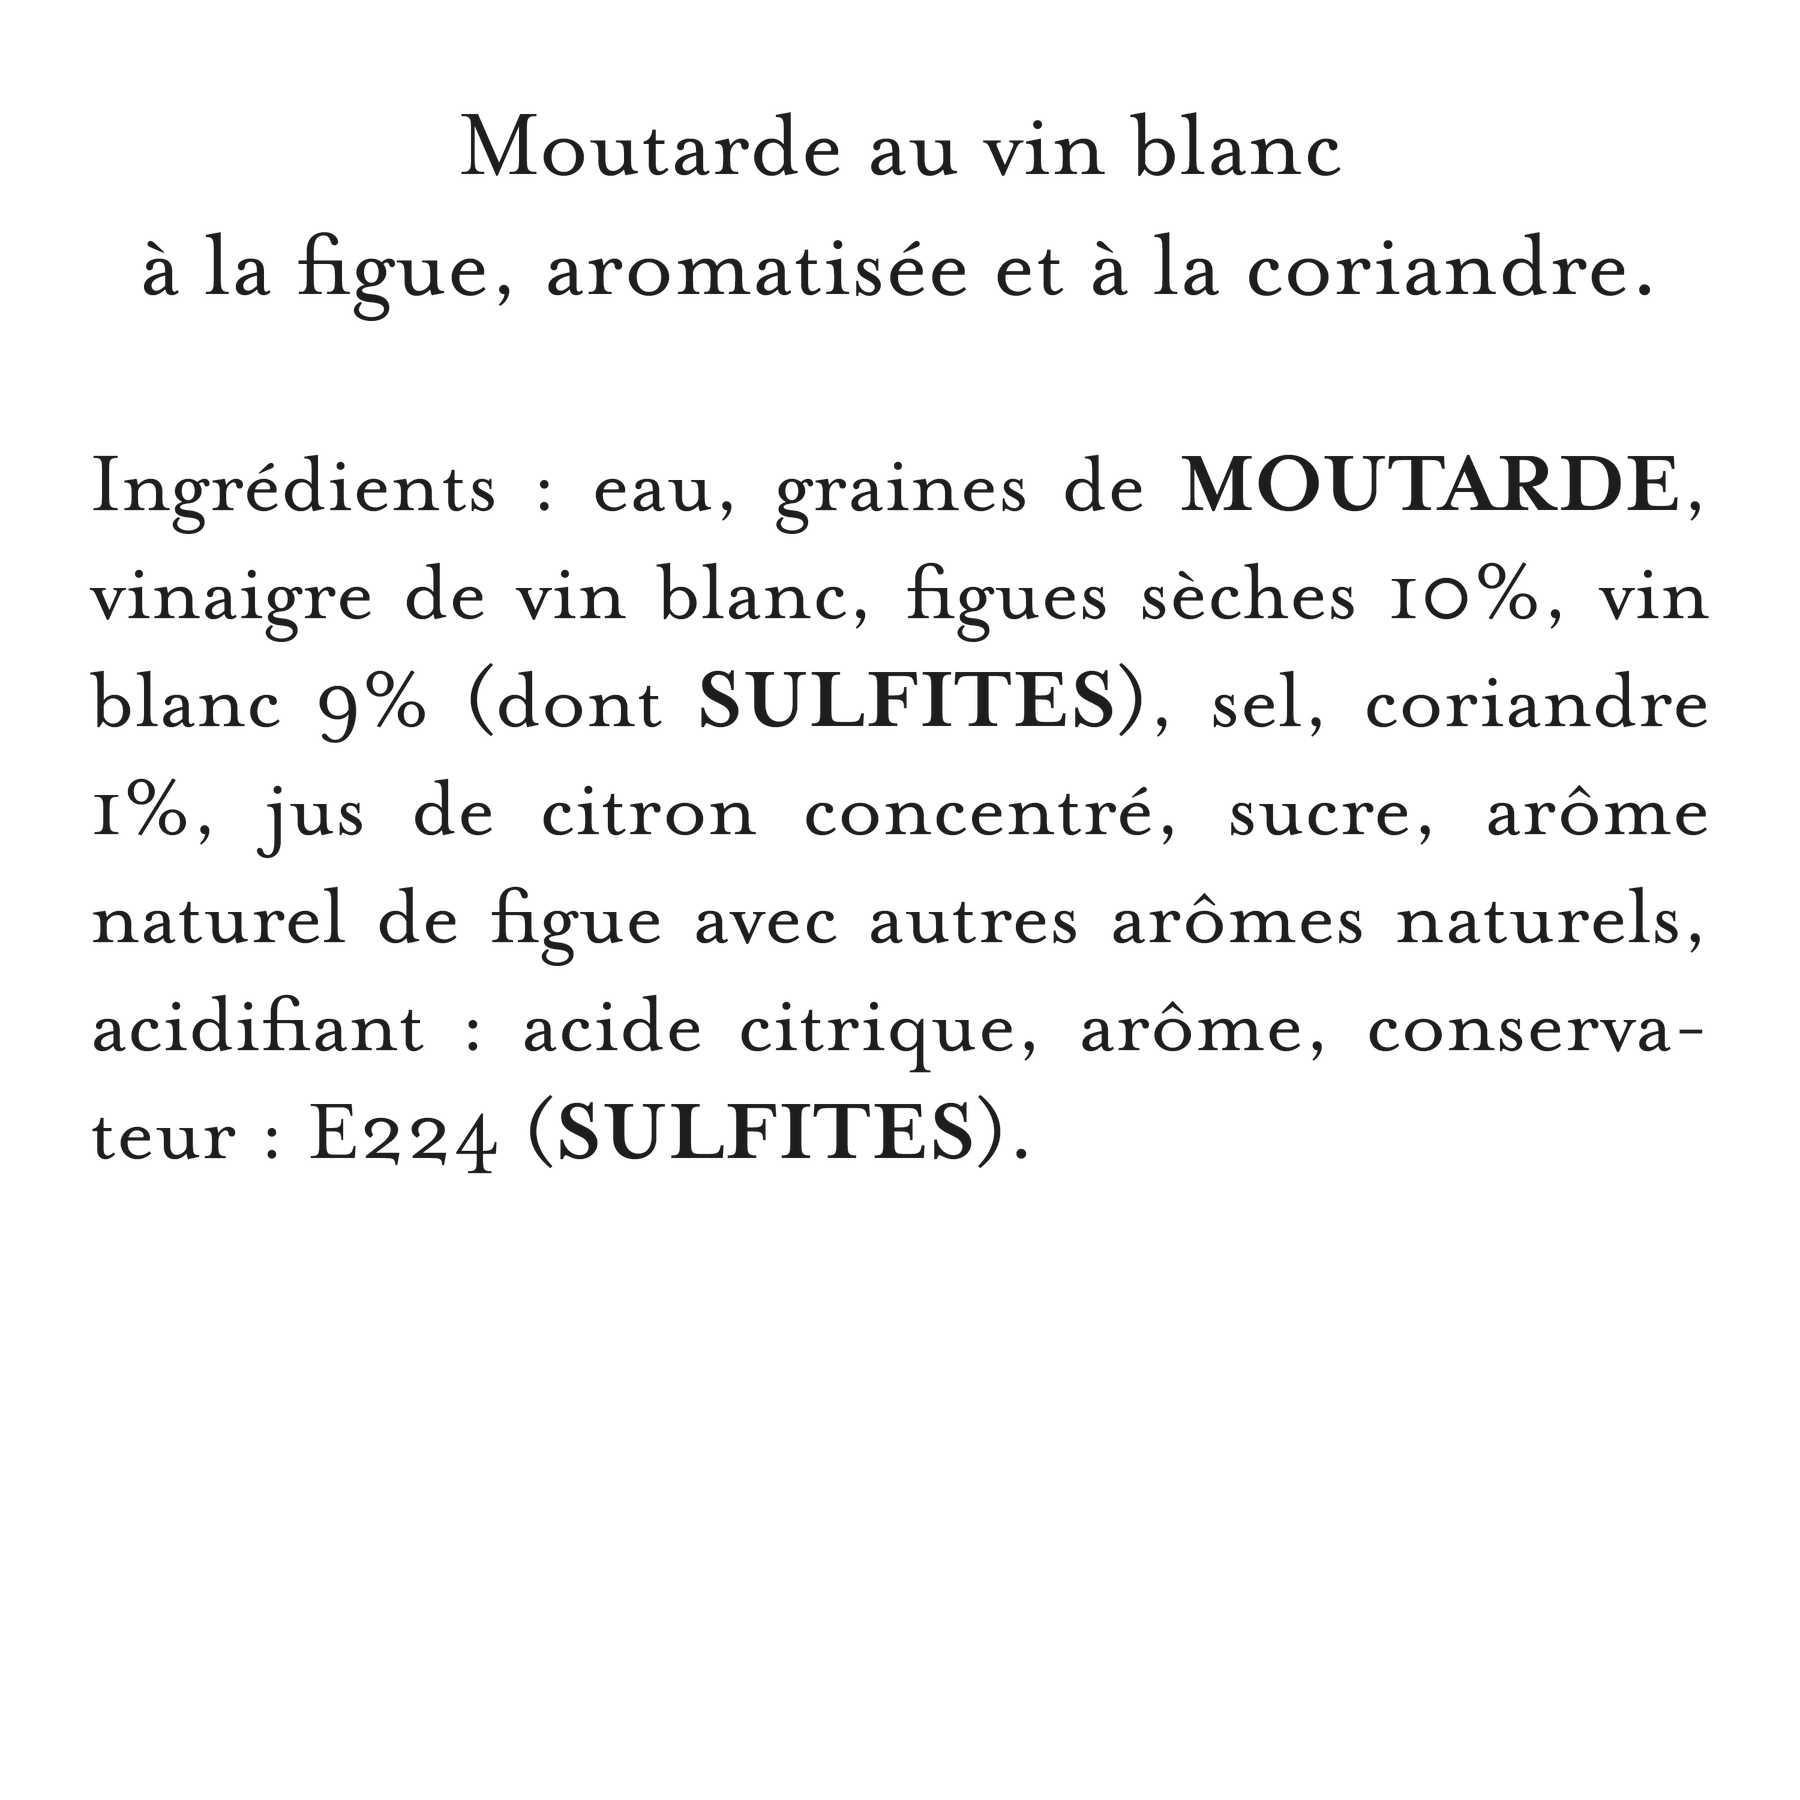 Maille - Moutarde au vin blanc, figue et coriandre, 110 g, liste d'inrgédients